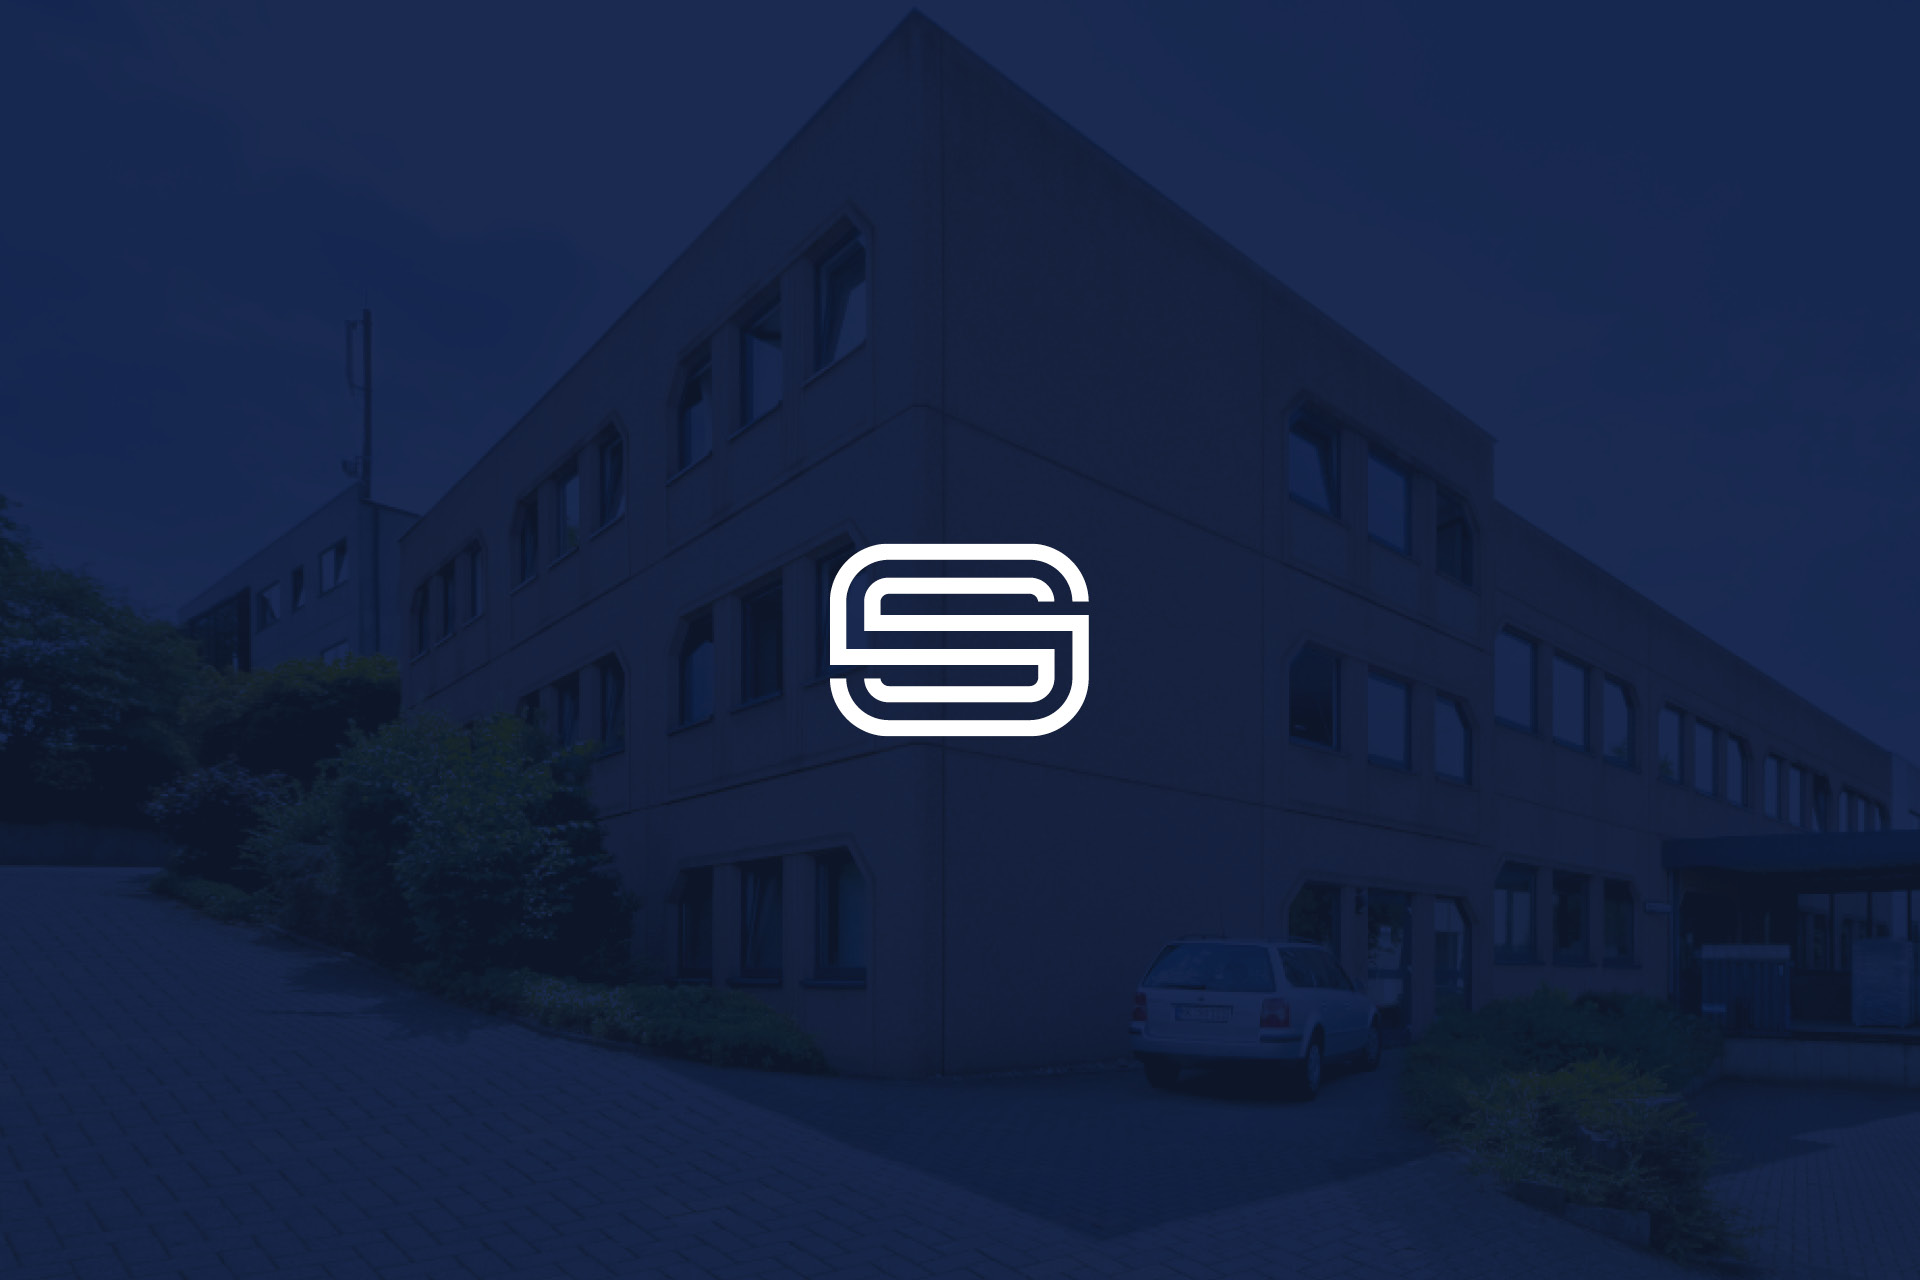 SOMA GmbH